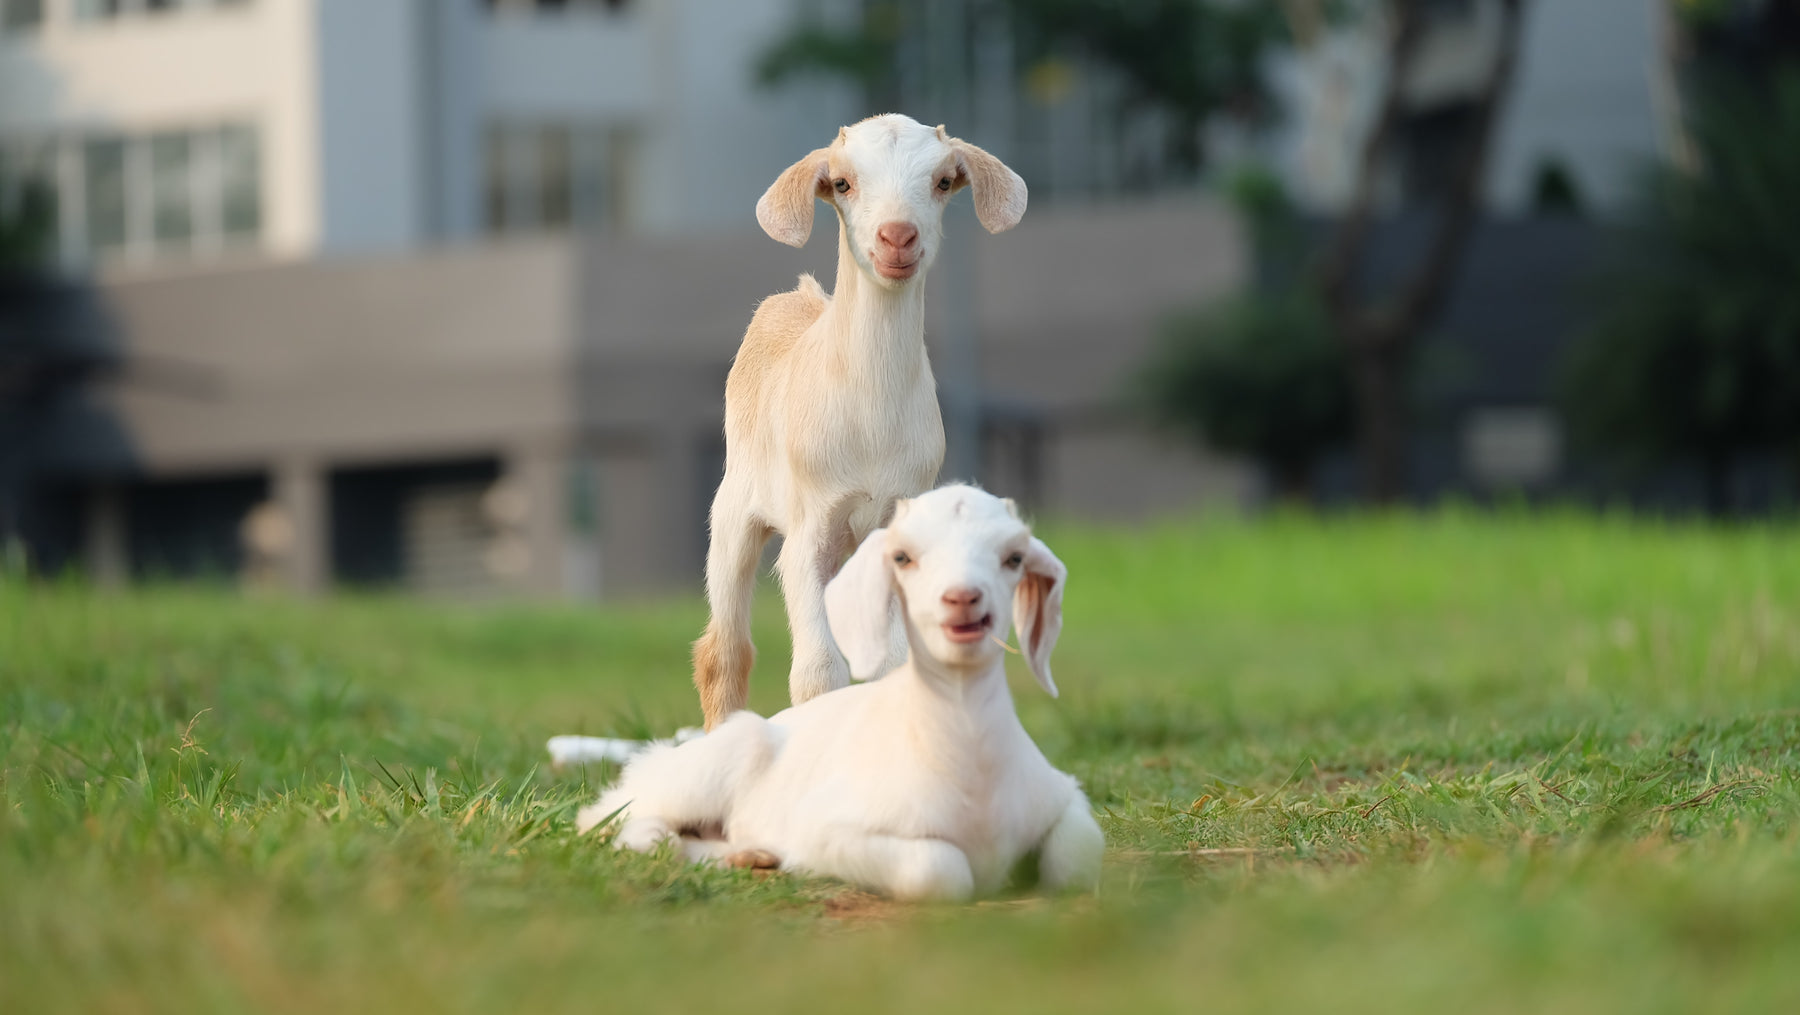 Joyful Playmates: Baby Goats in the Garden